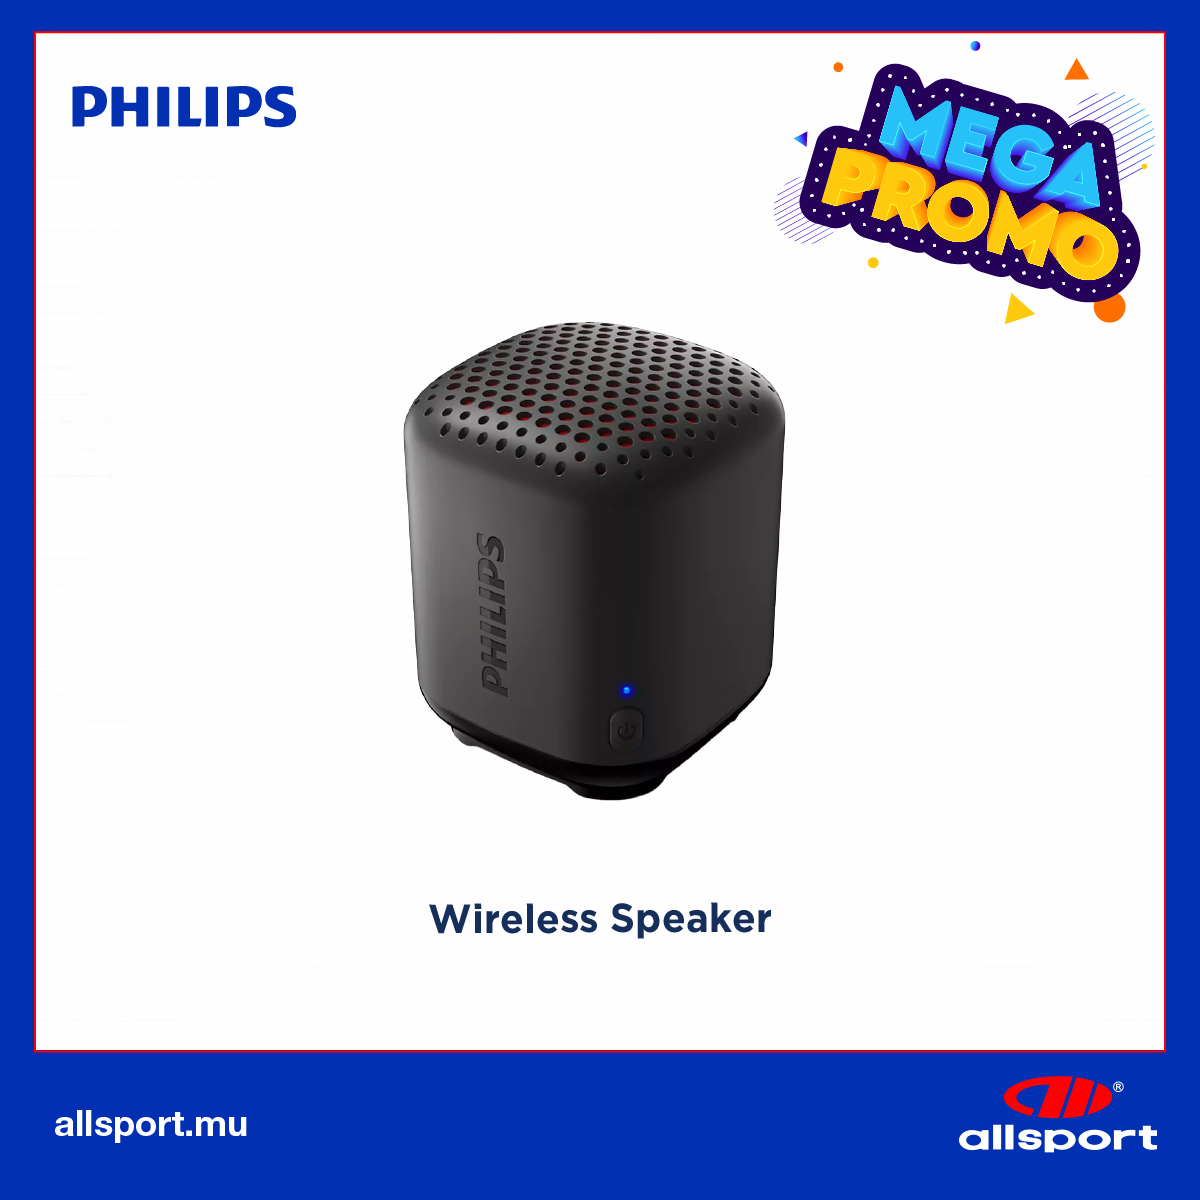 PHILIPS Wireless speaker 2.5W